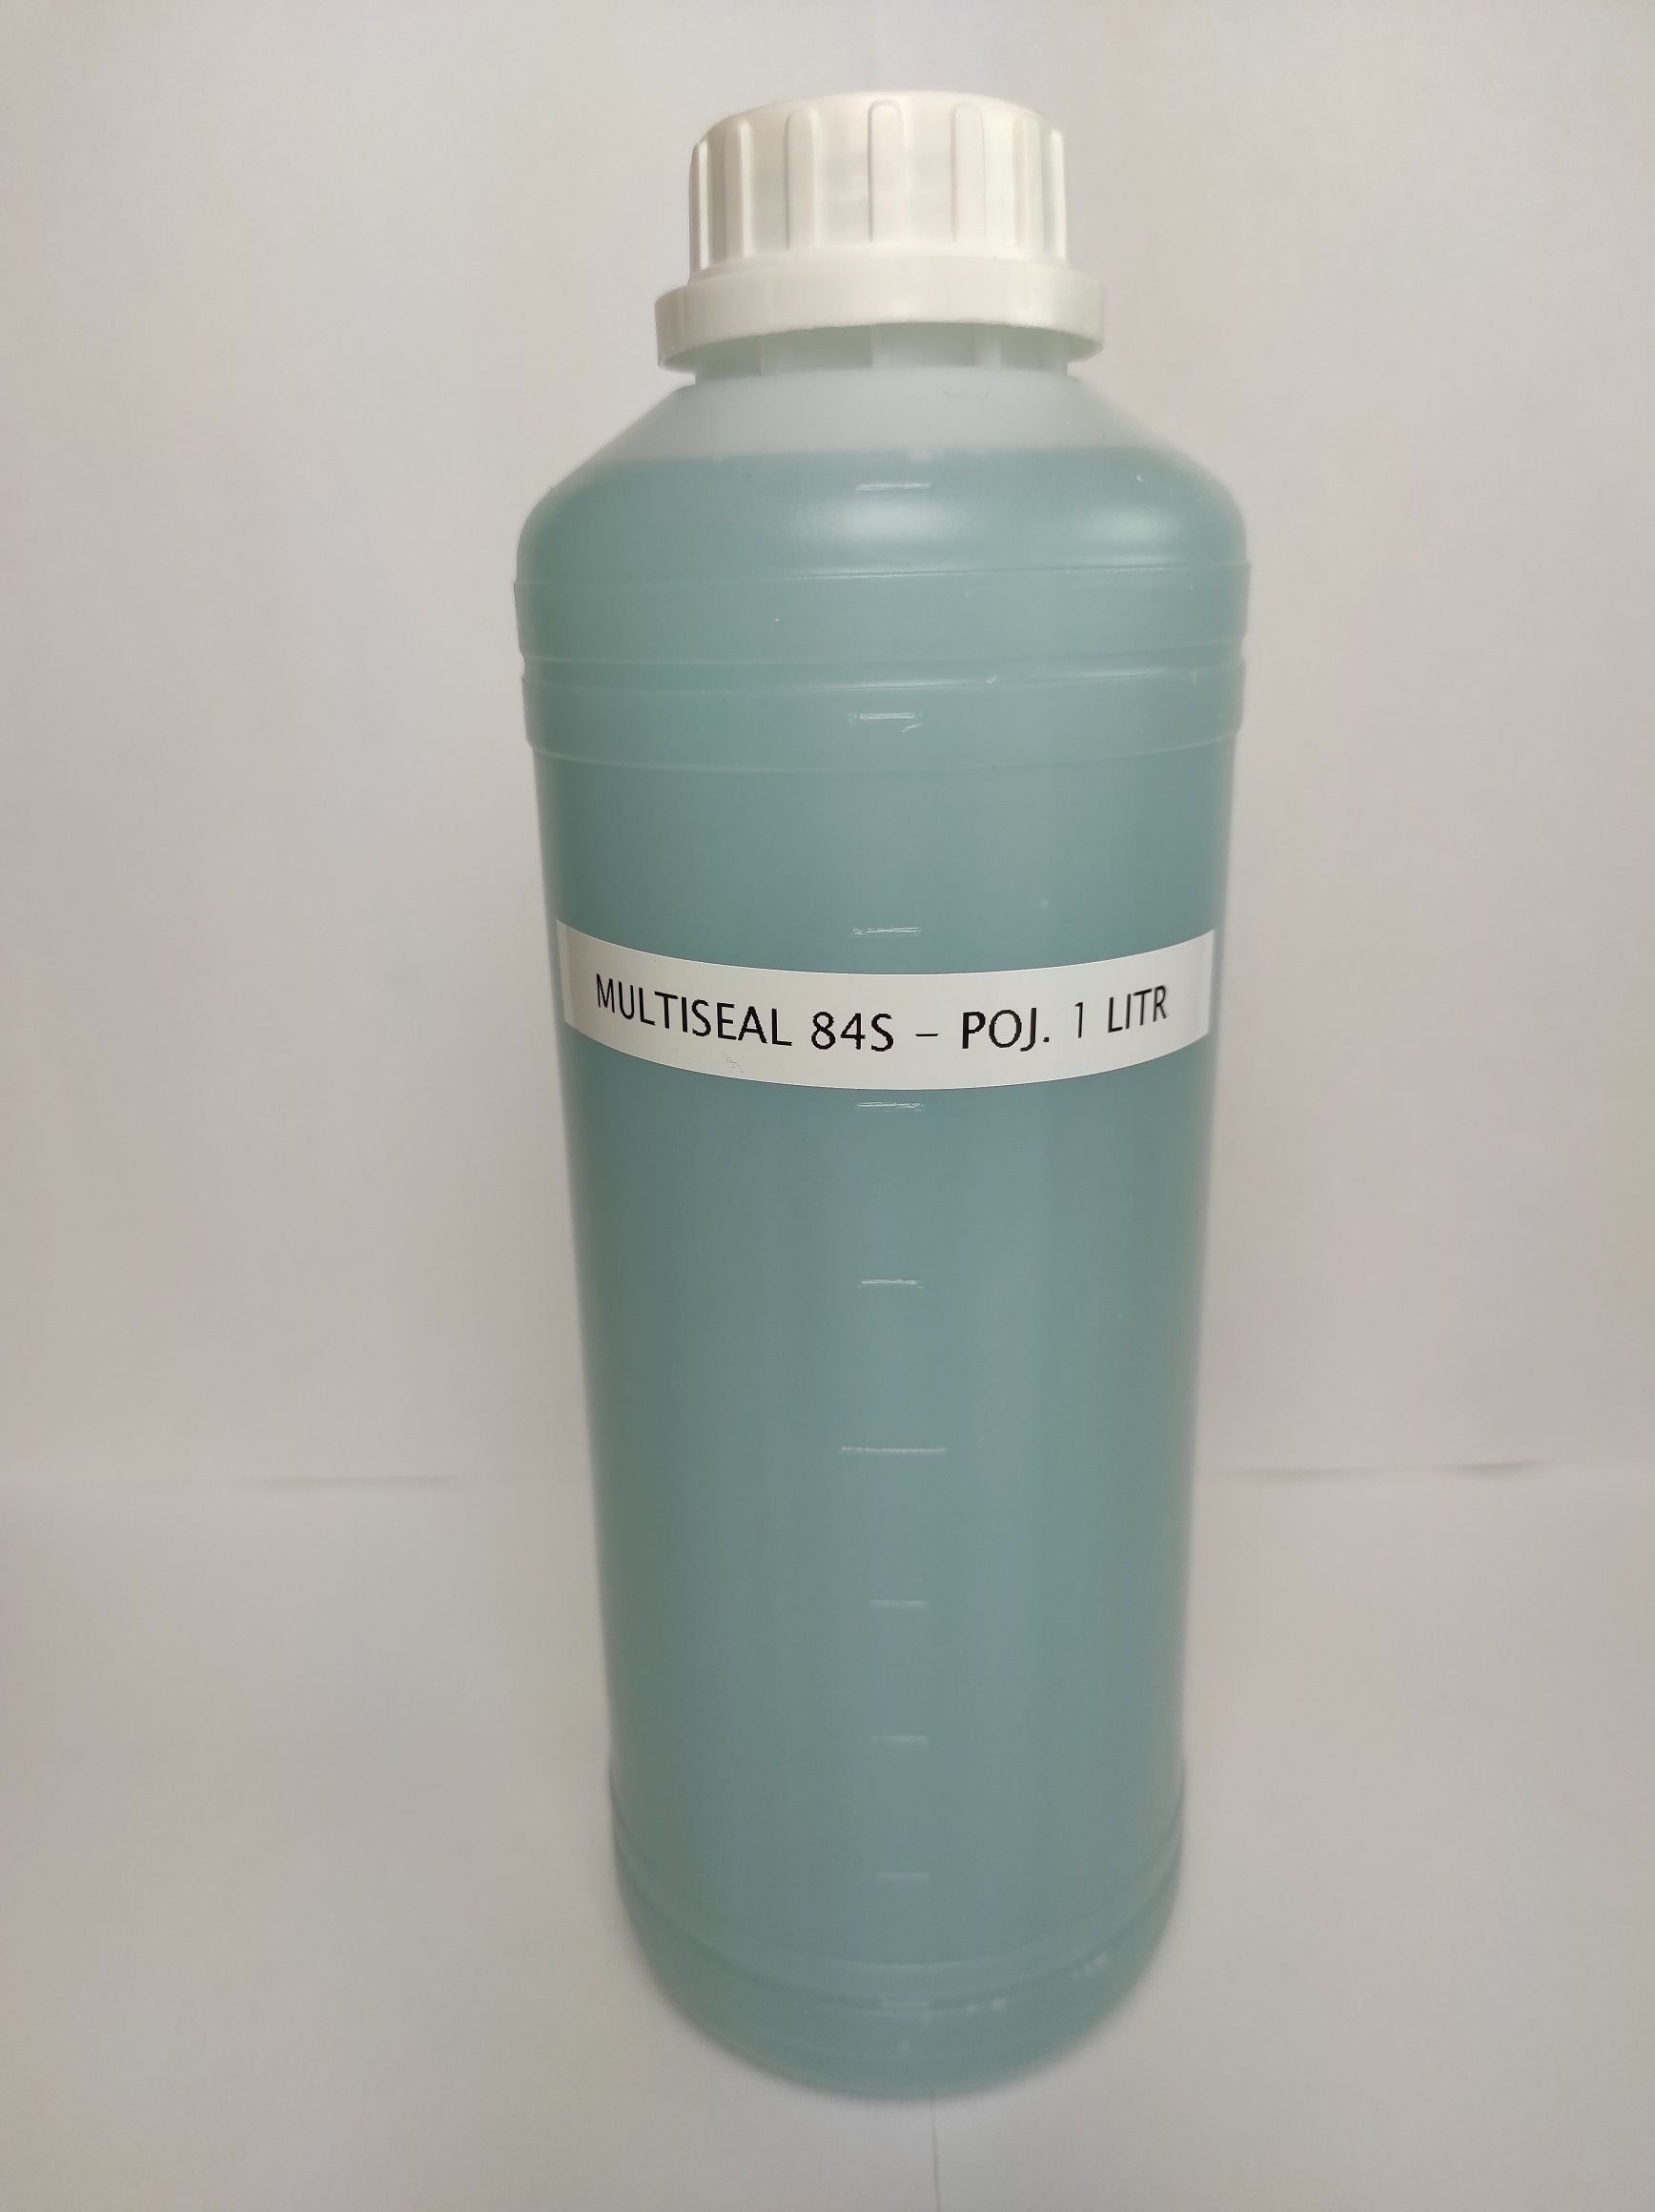 Mutliseal 84 S wyciek wody do 20 litrów na dobę